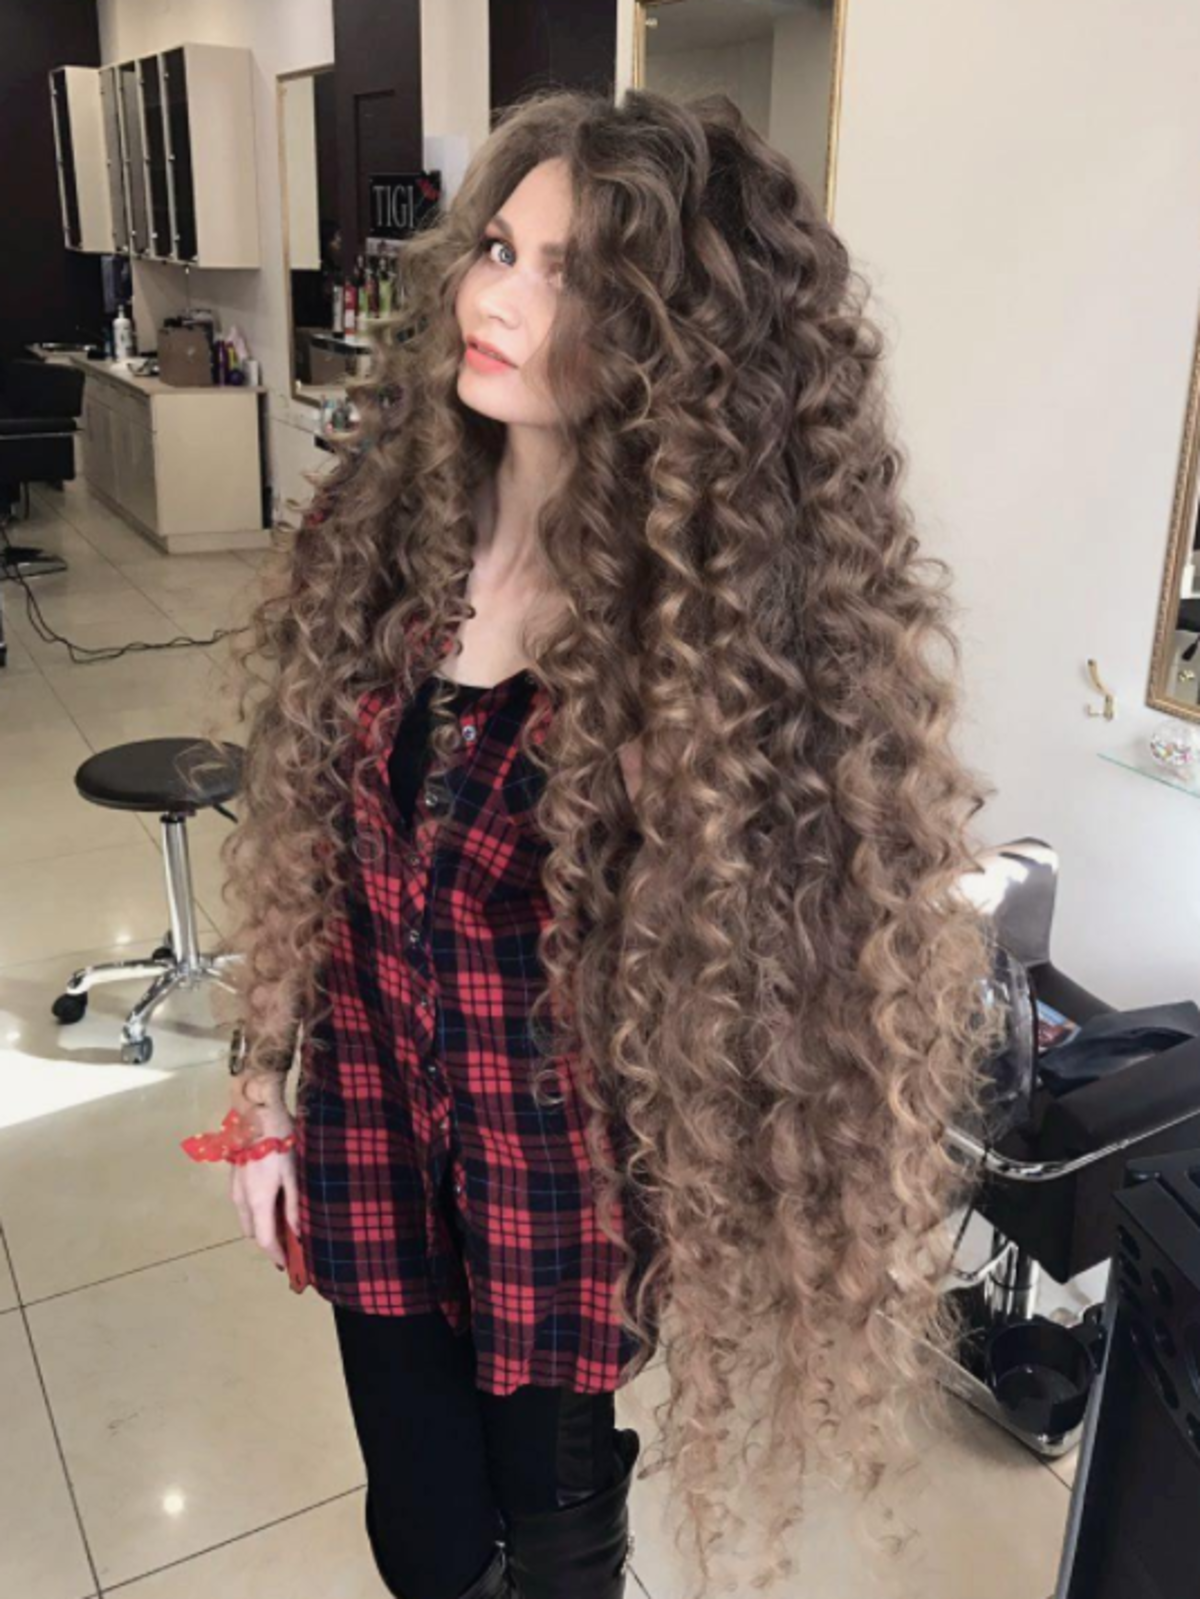 Rosyjska Roszpunka - ta dziewczyna od 14 lat nie obcina włosów